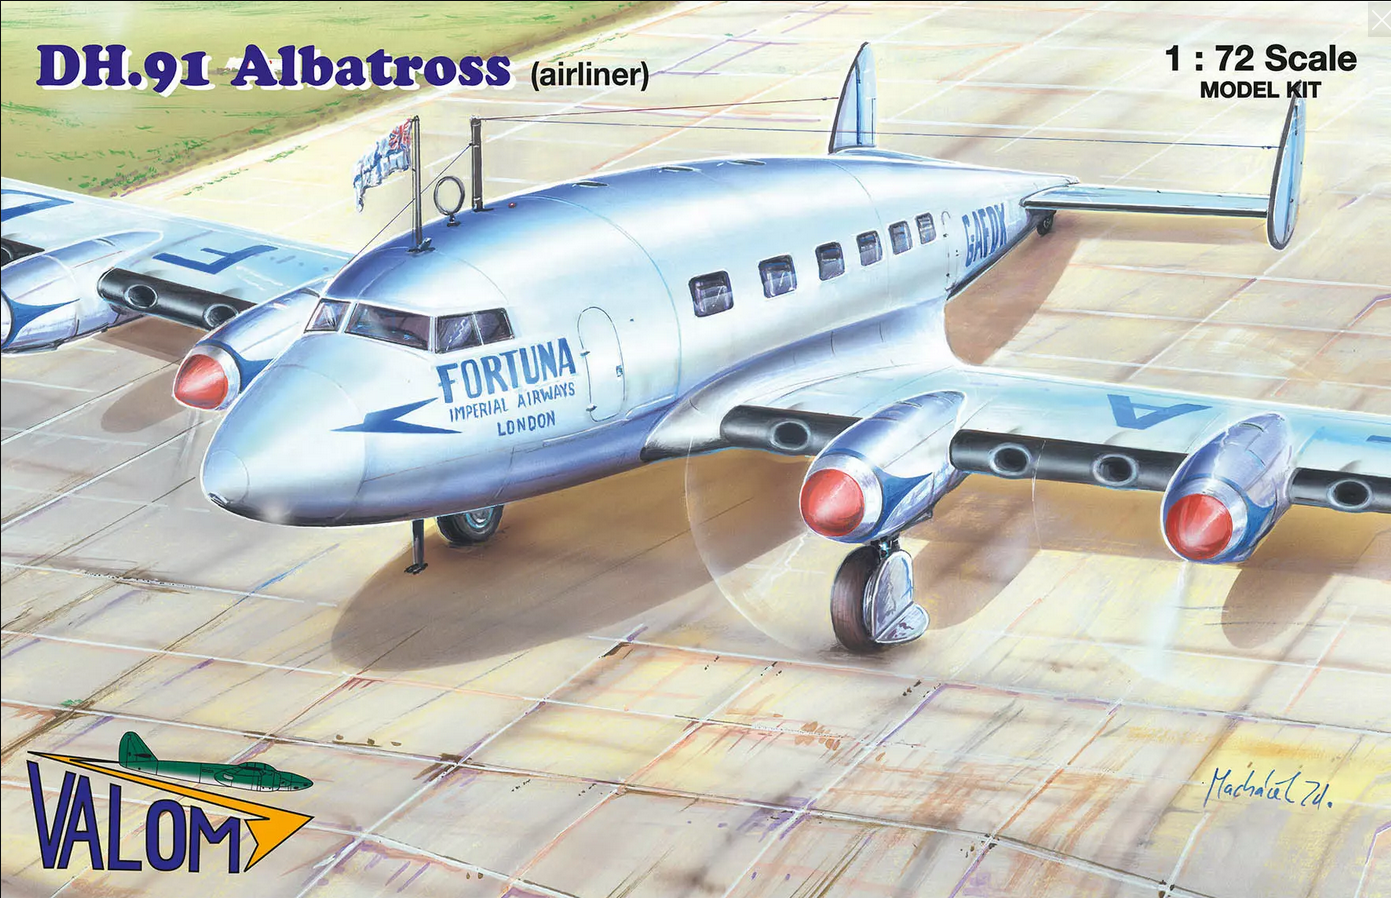 De Havilland DH.91 Albatross Airliner - VALOM 1/72